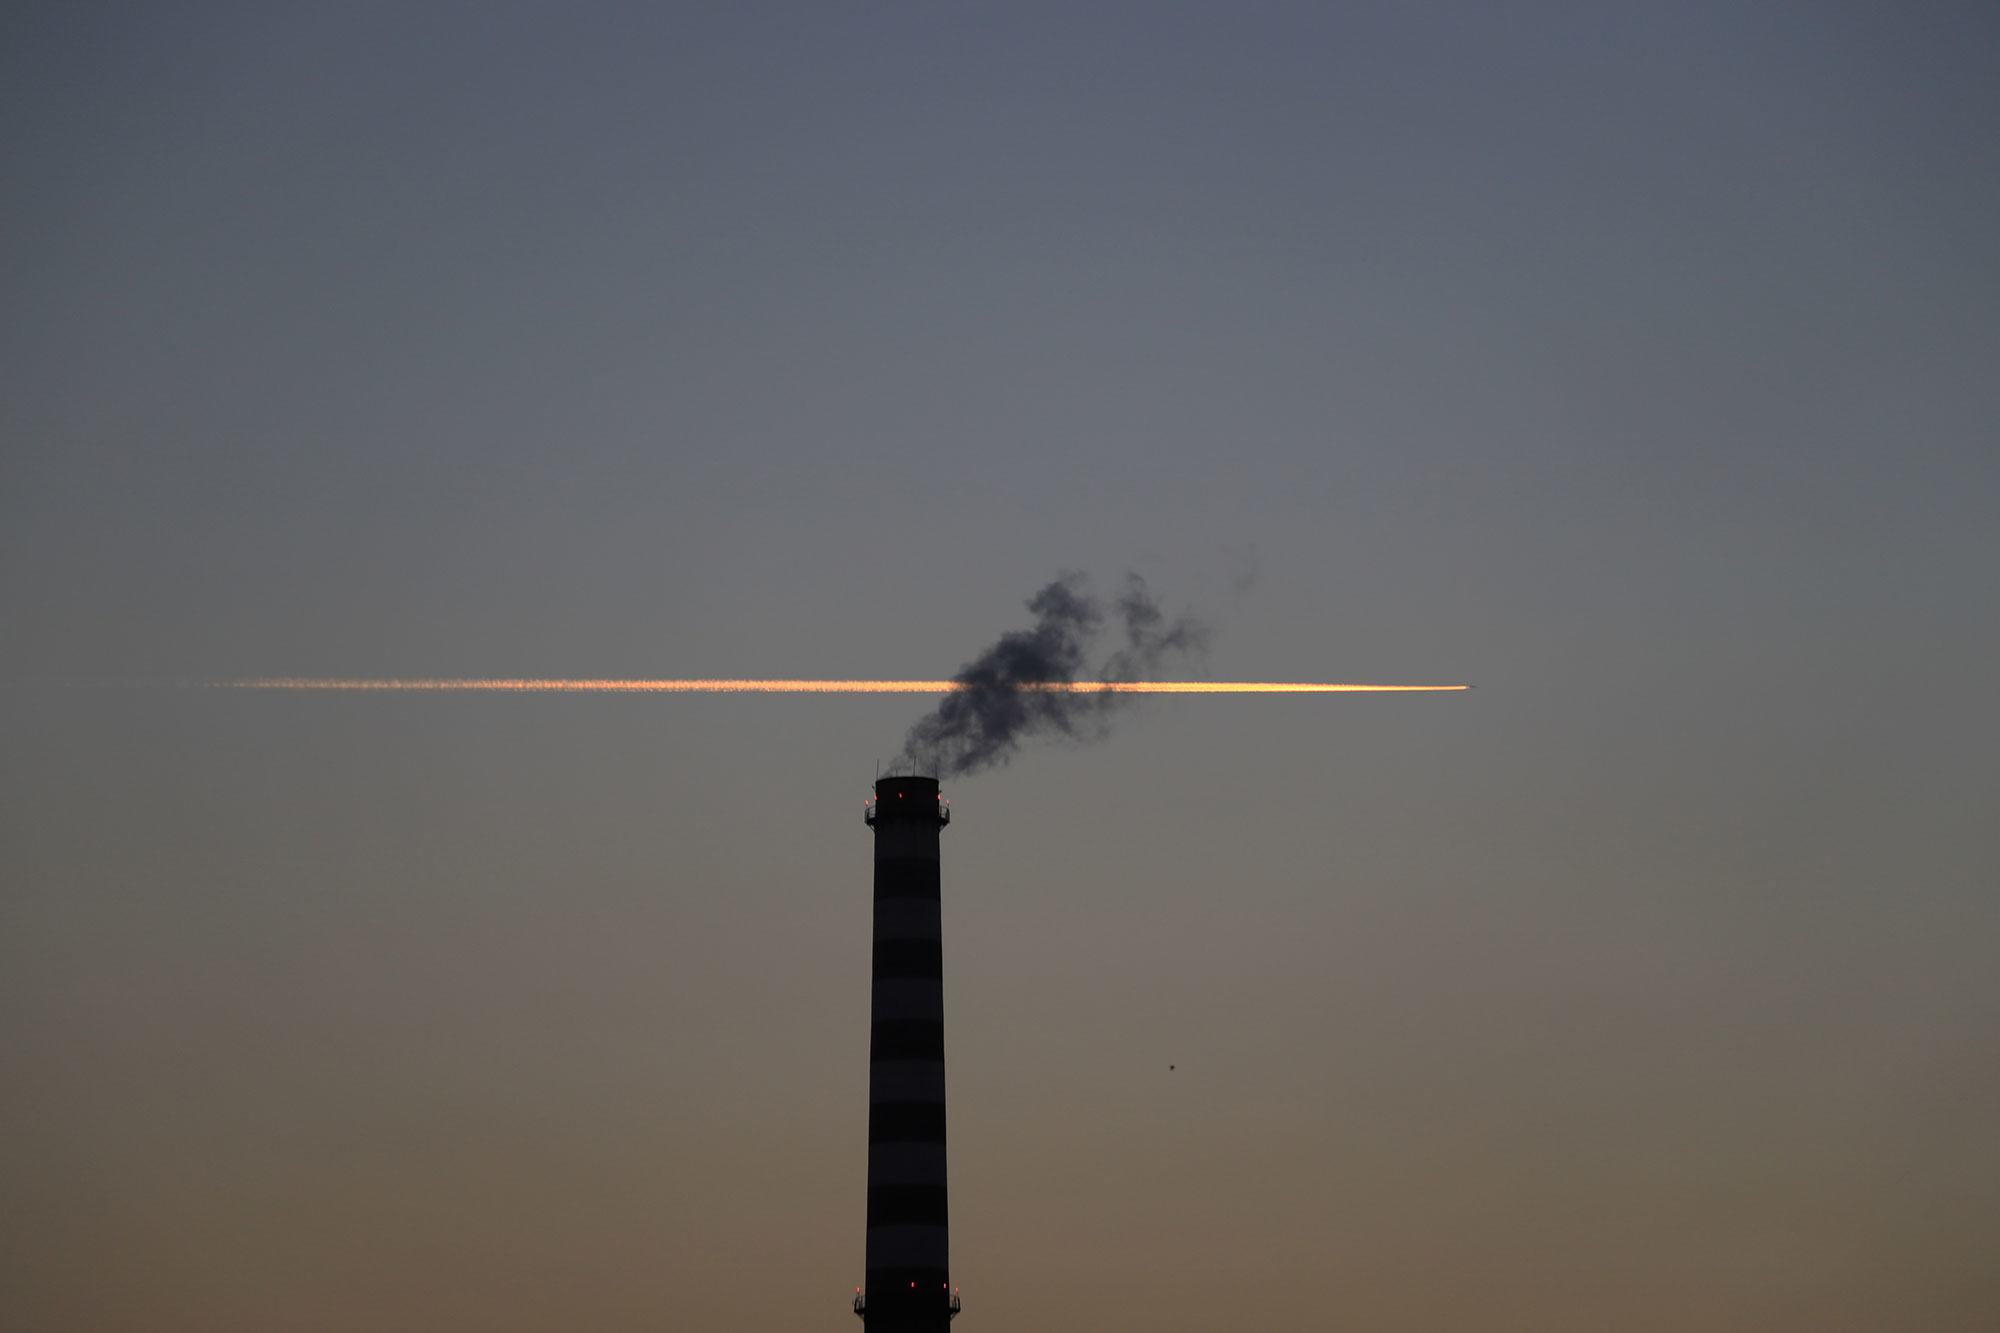 化石燃料排放的空气污染物对环境和公众健康都有害。